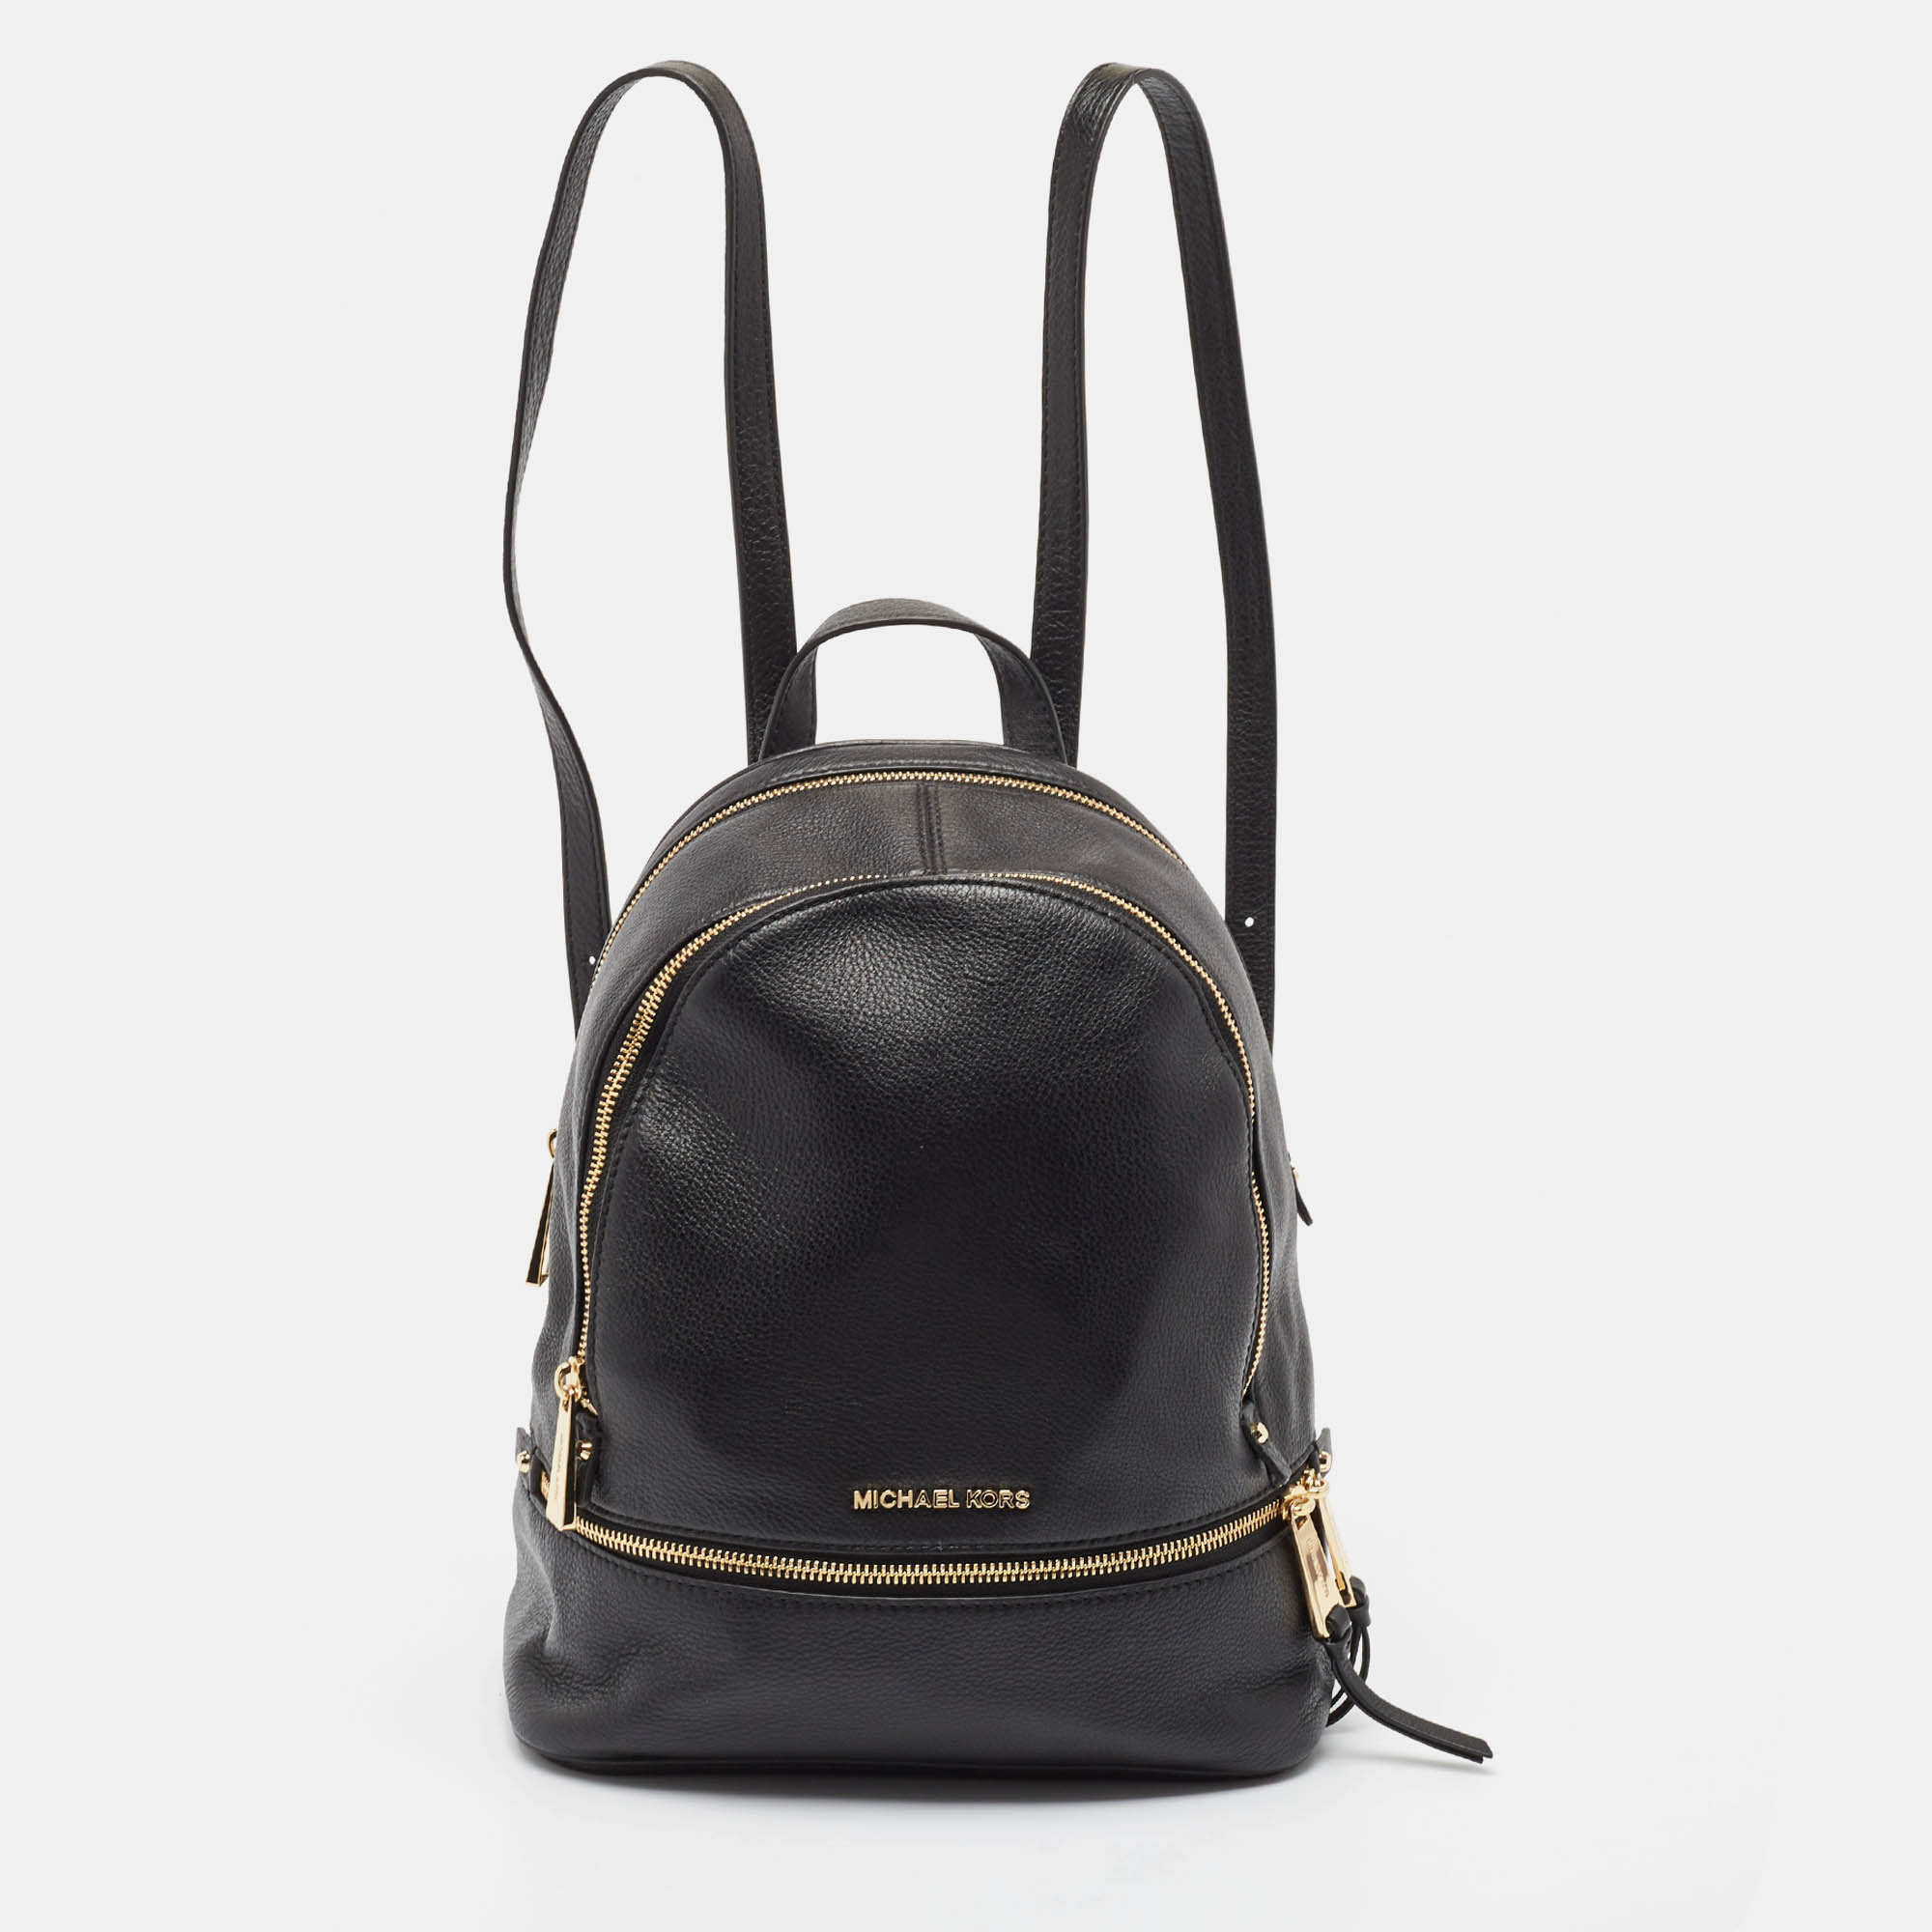 

Michael Kors Black Leather Medium Rhea Backpack